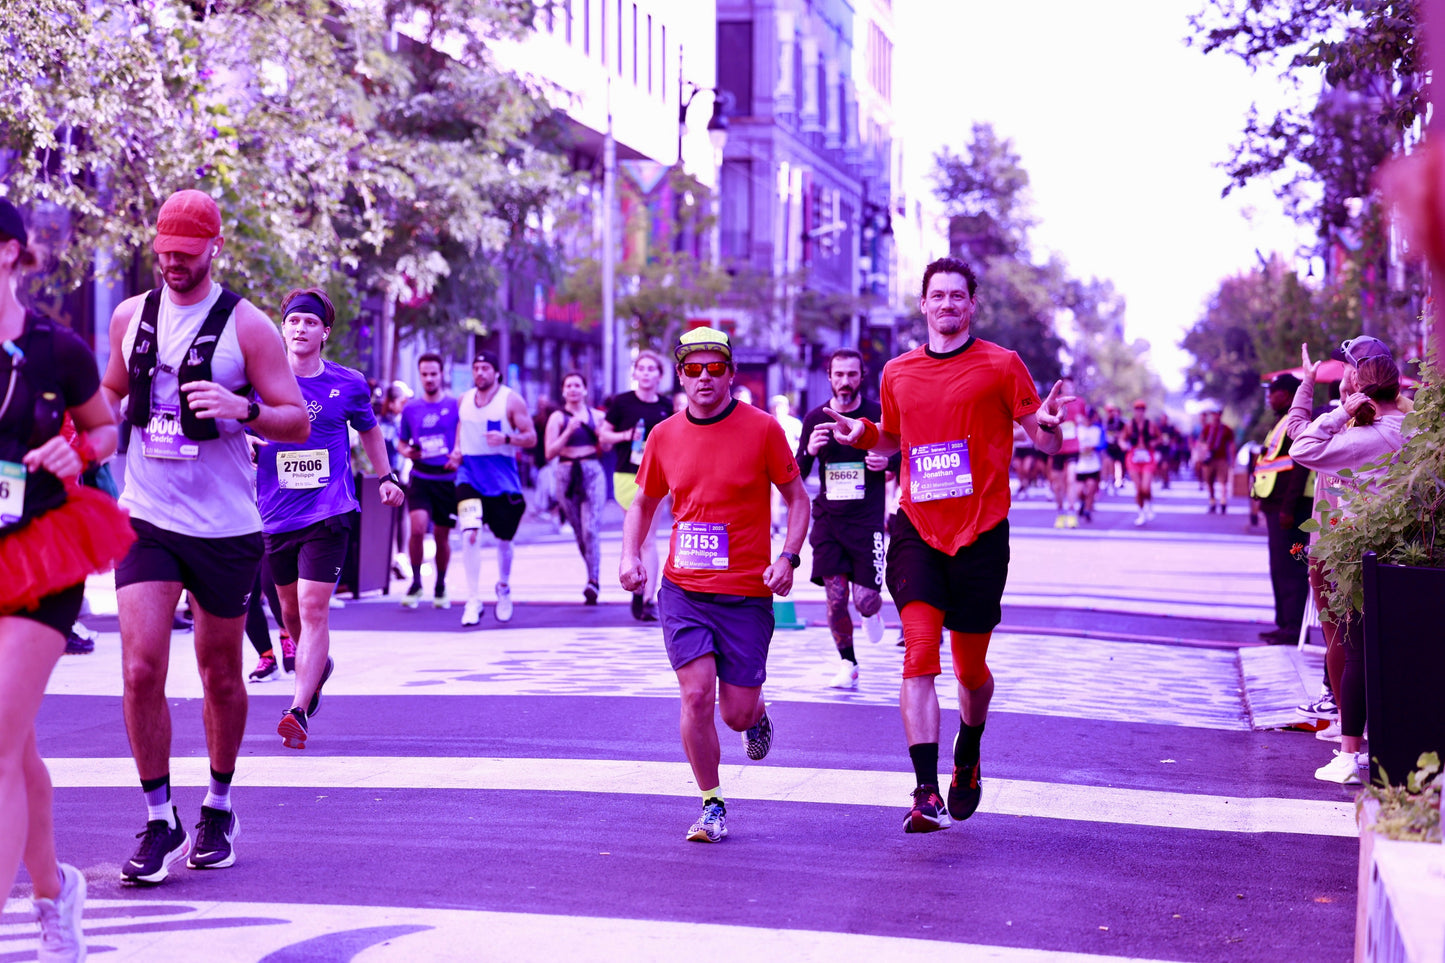 Shorts 42,2 KM MTL Marathon en lin noir avec doublure en bambou rouge